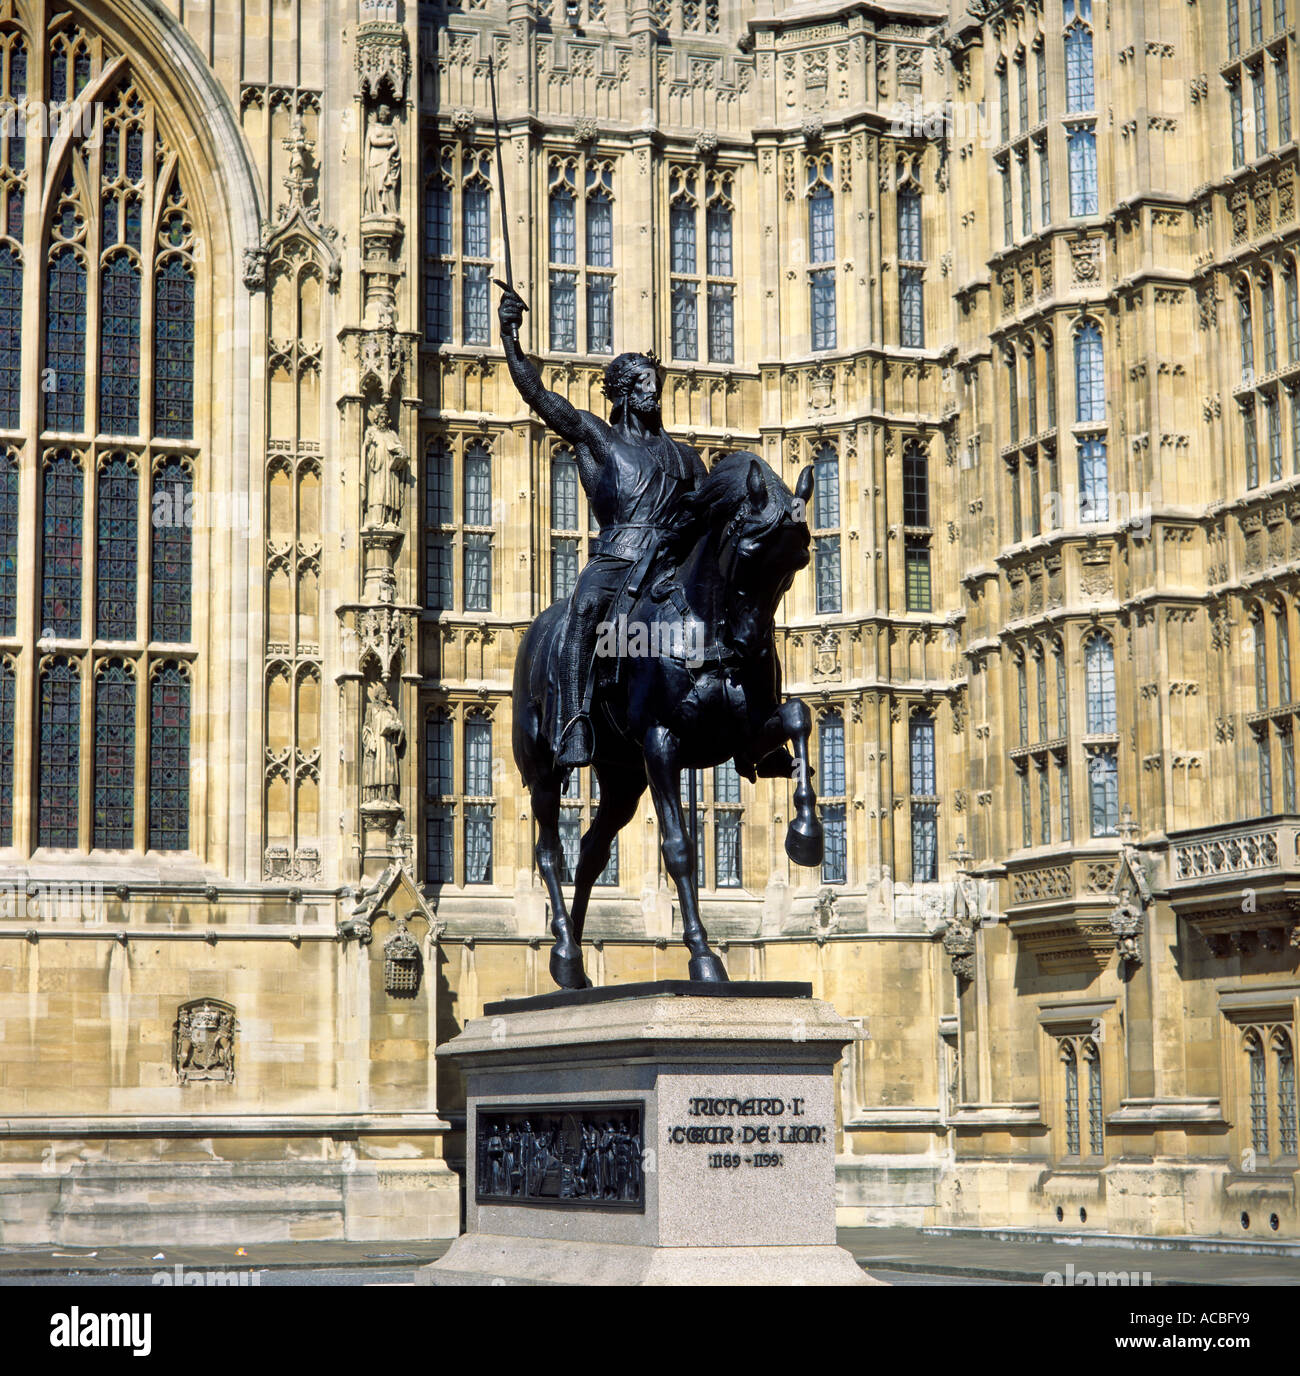 König Richard Löwenherz Richard 1. außerhalb Westminster des Parlaments London England Häuser Großbritannien zur redaktionellen Verwendung o Stockfoto